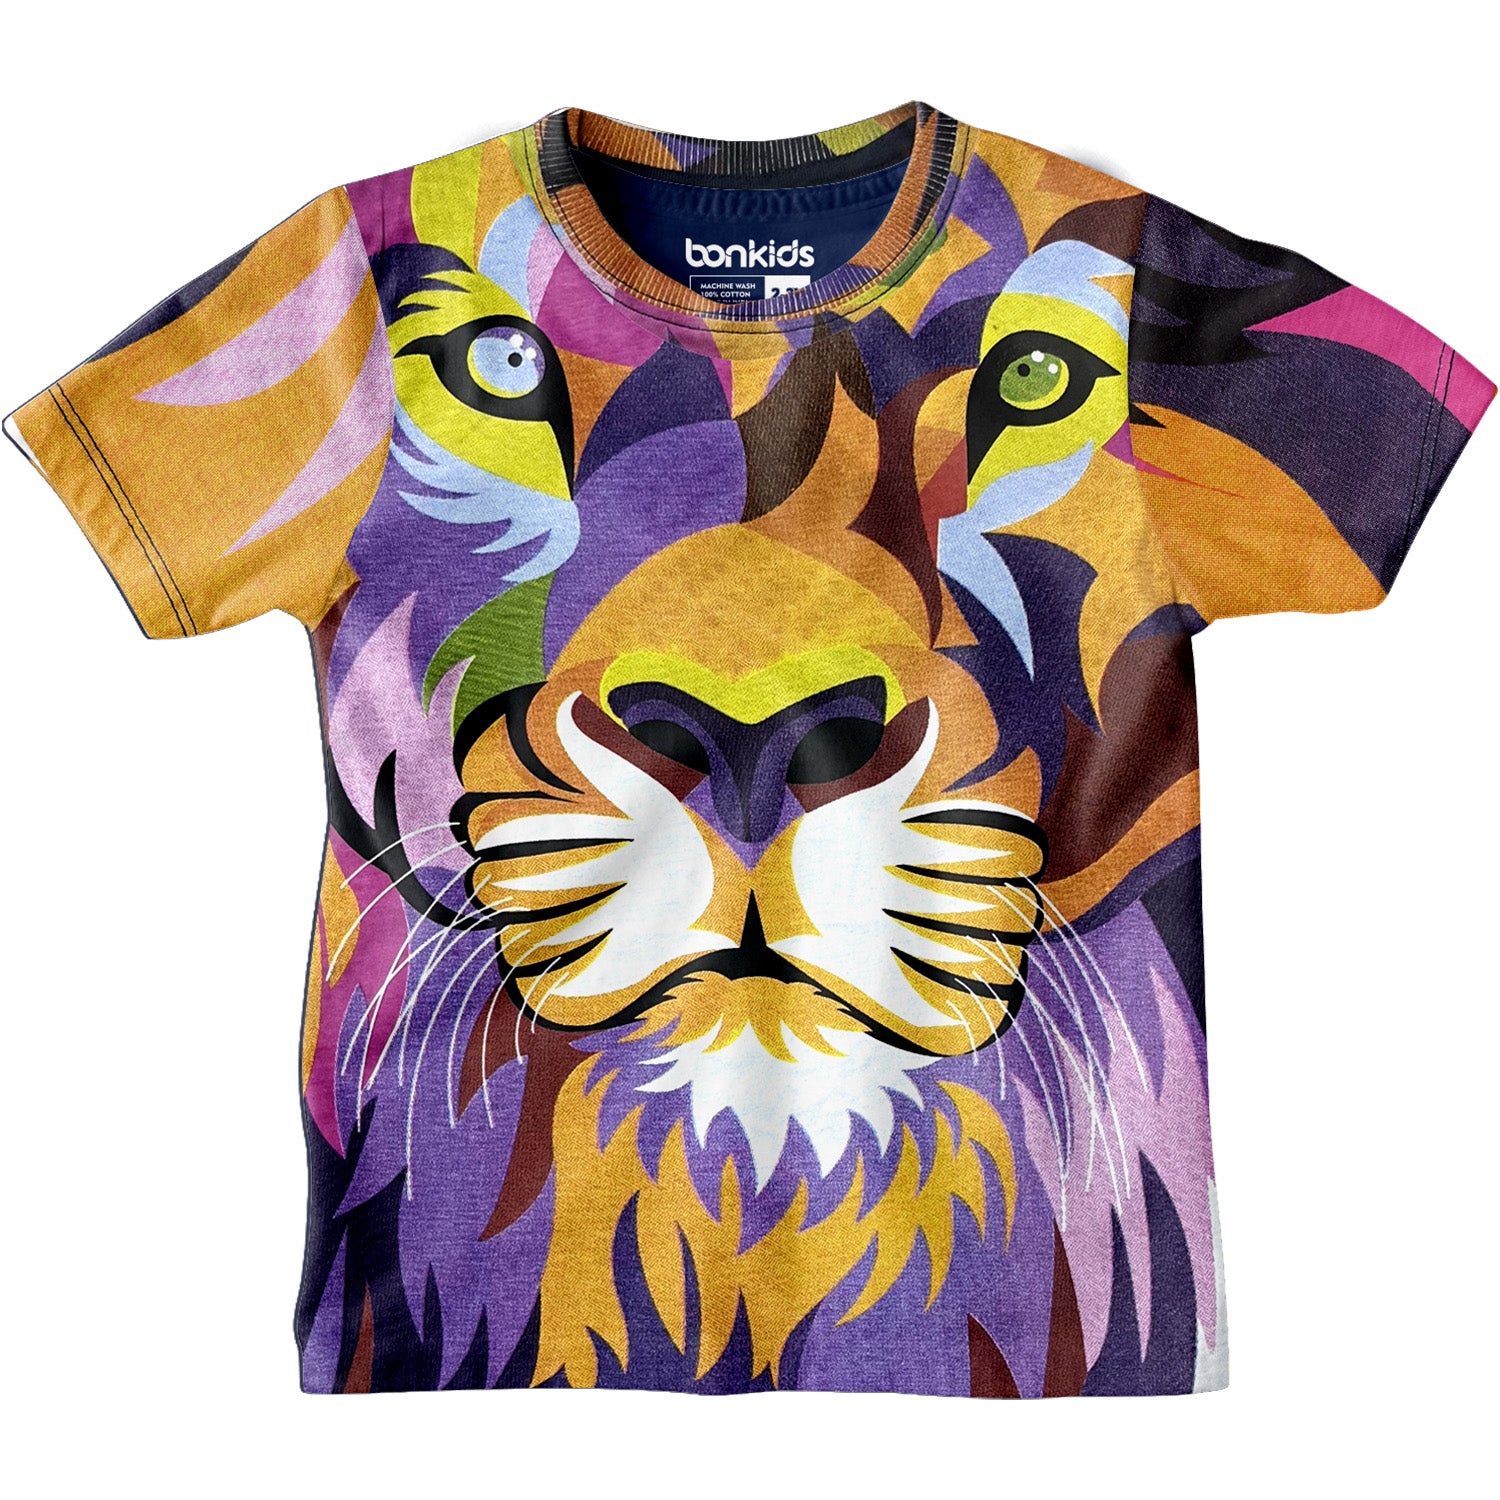 Lion logo poster flyer or t shirt design Vector Image